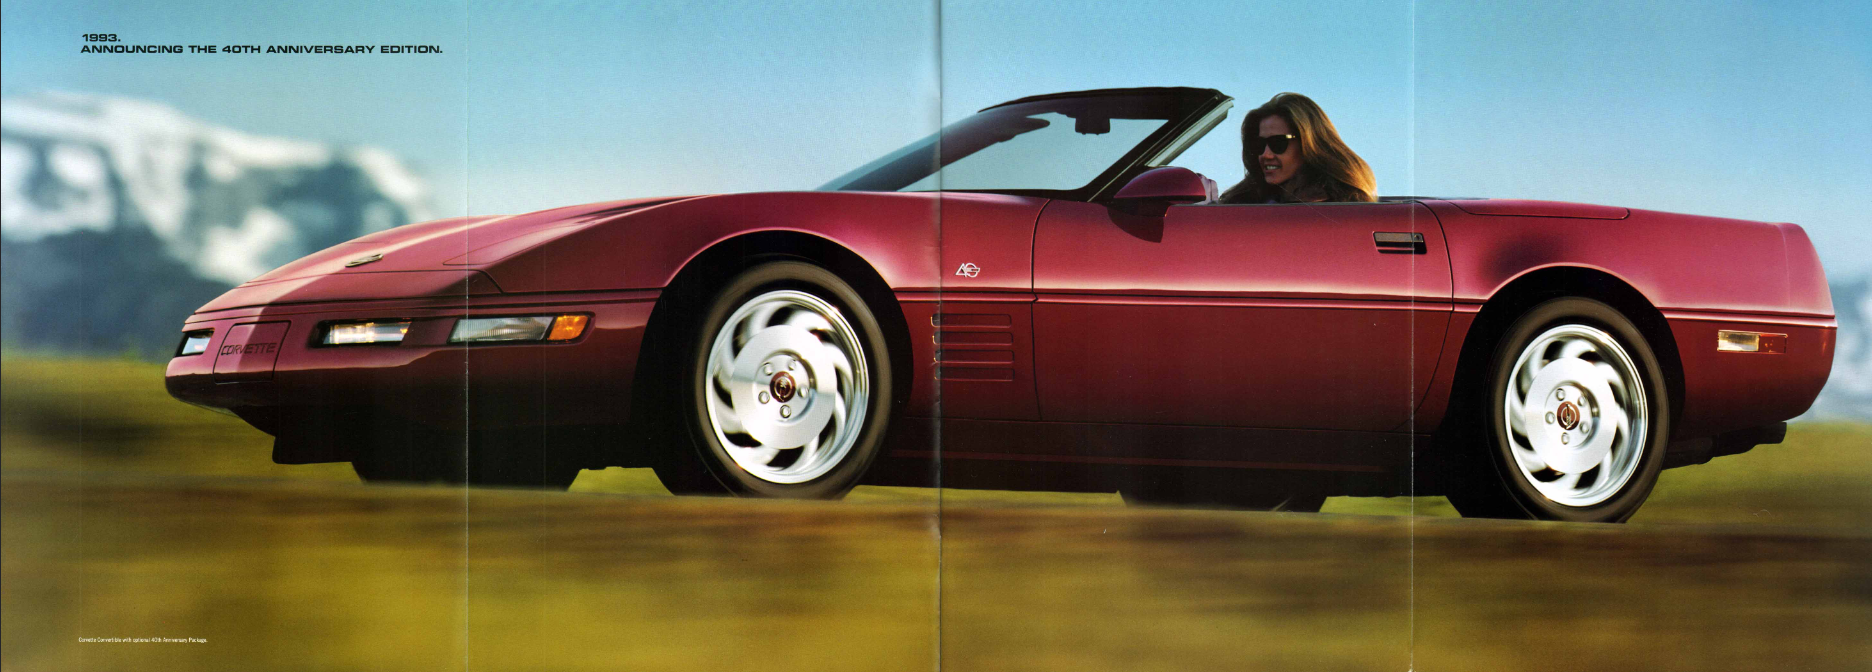 1993 Corvette brochure